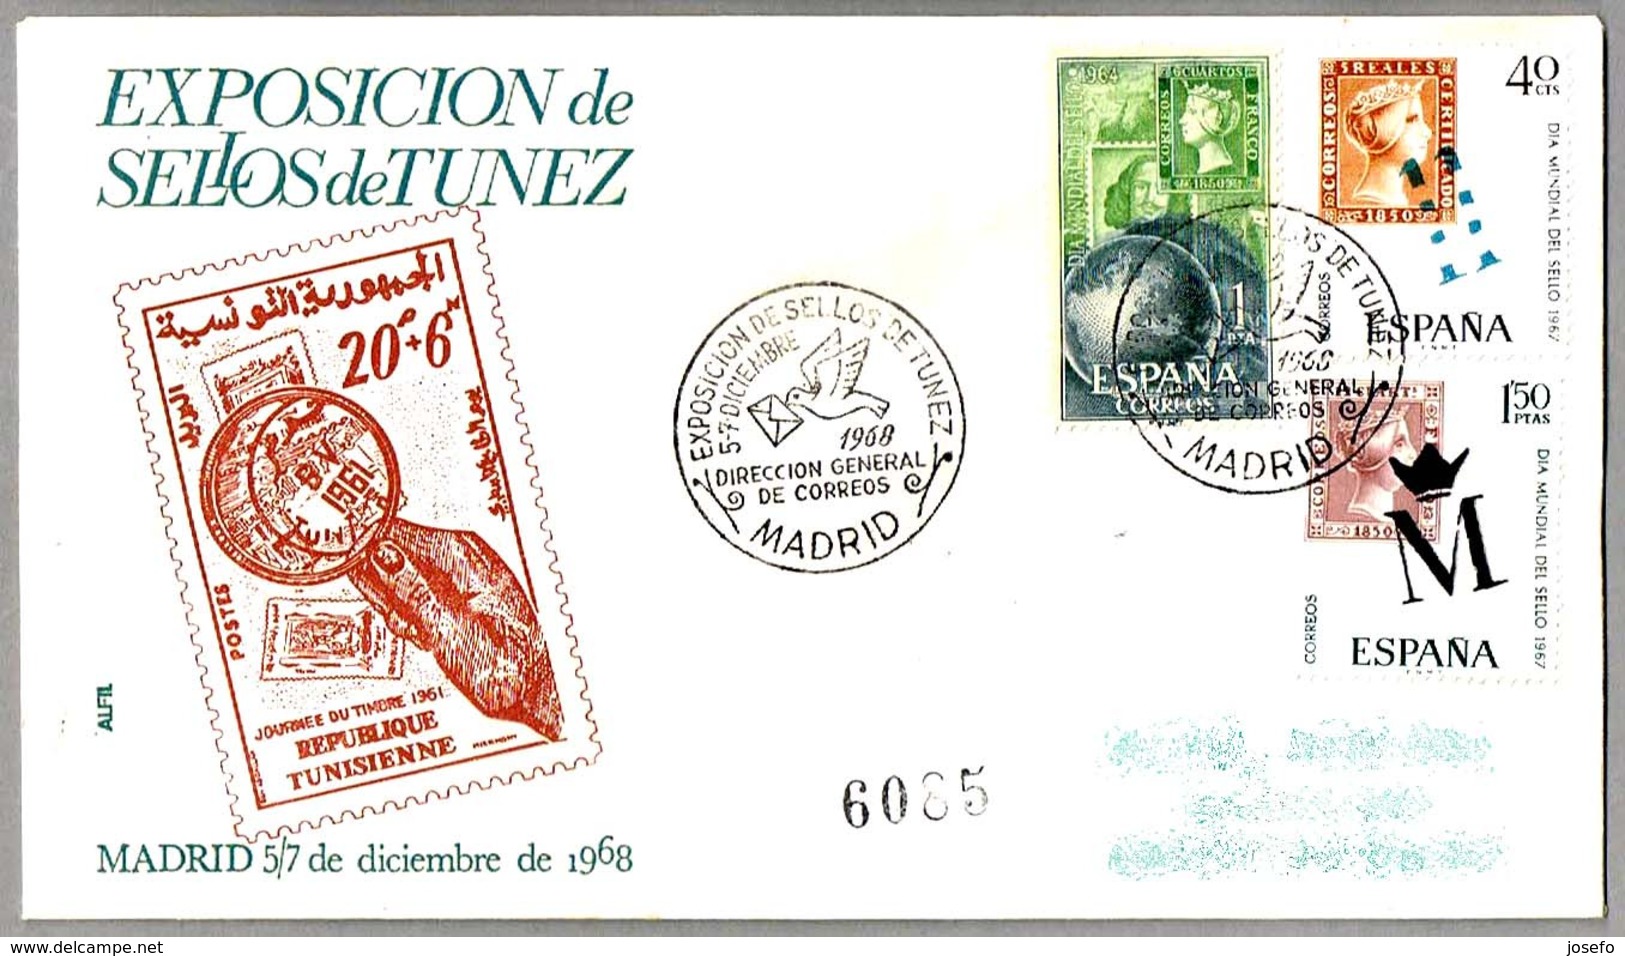 Exposicion De SELLOS DE TUNEZ - Exhibition STAMPS OF TUNISIA. Madrid 1968 - Exposiciones Filatélicas